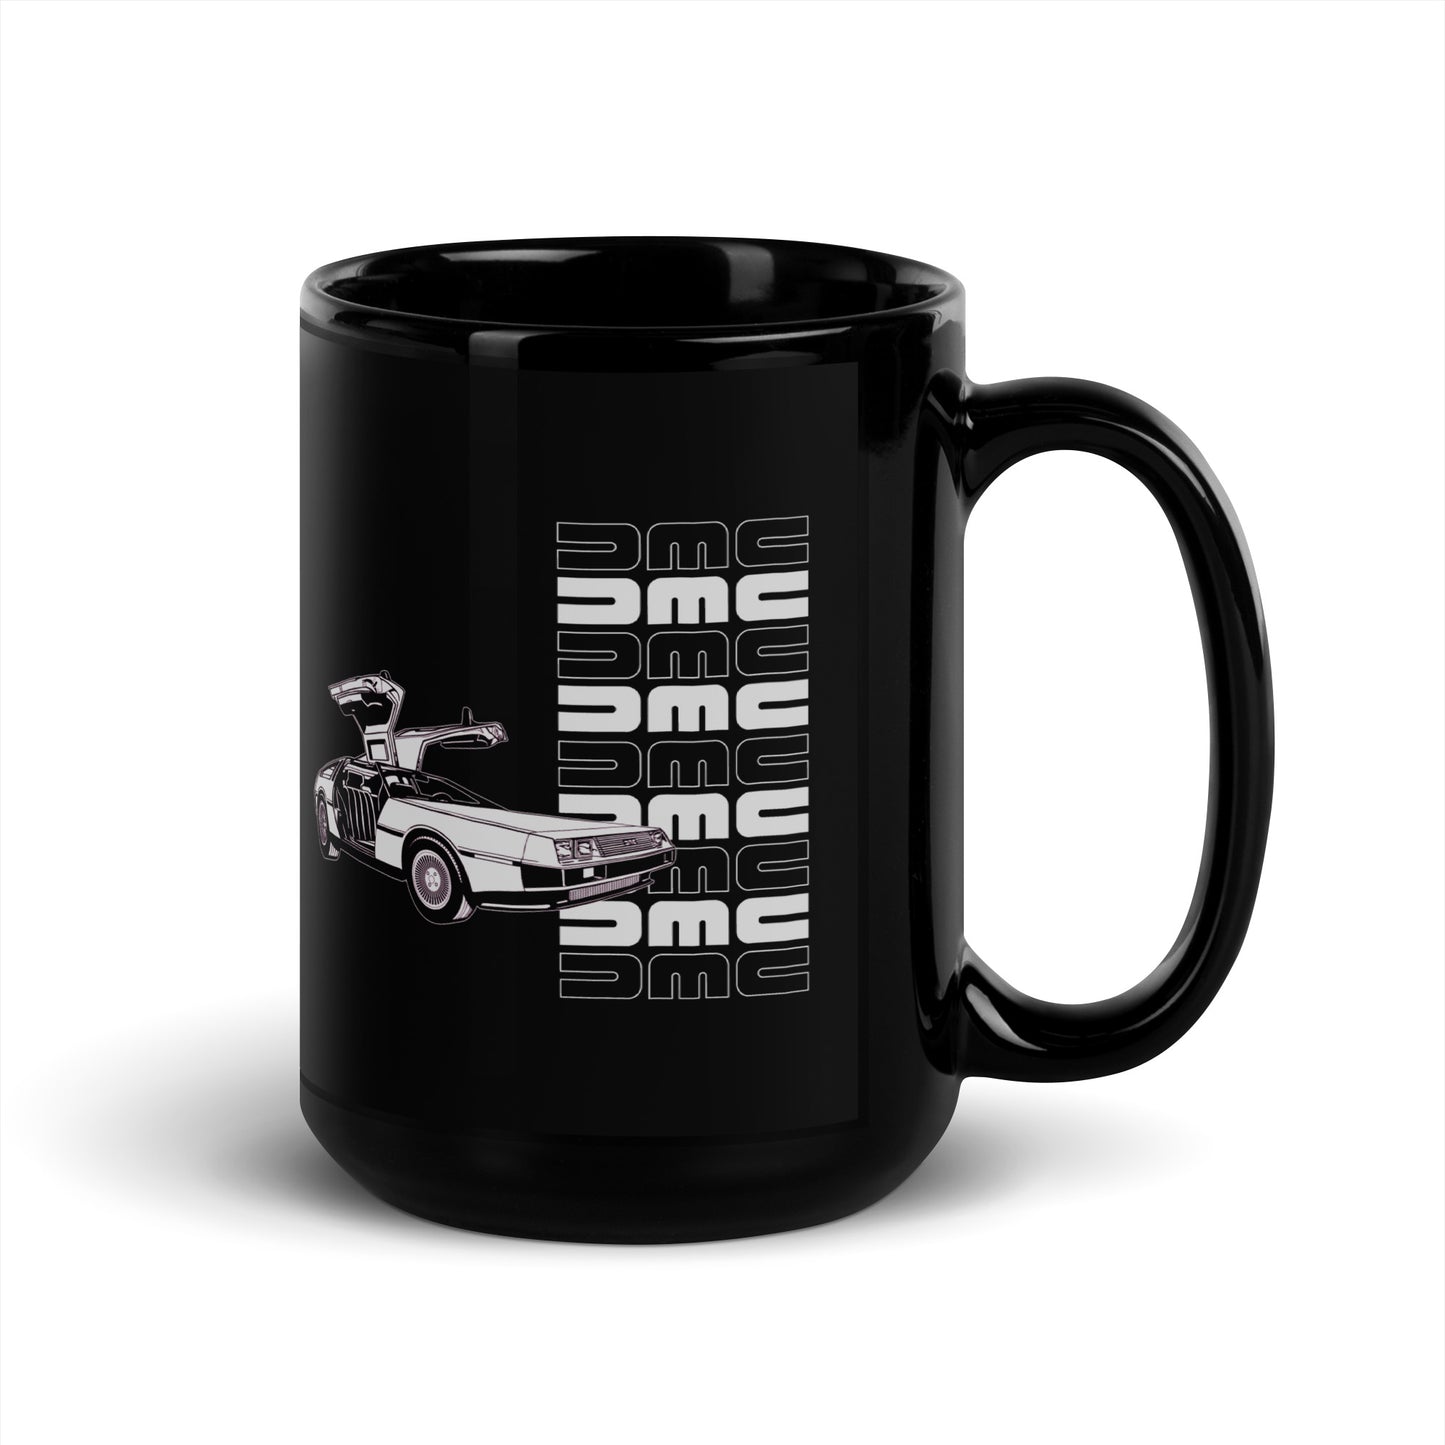 DeLorean Manual Mug (USA Only)